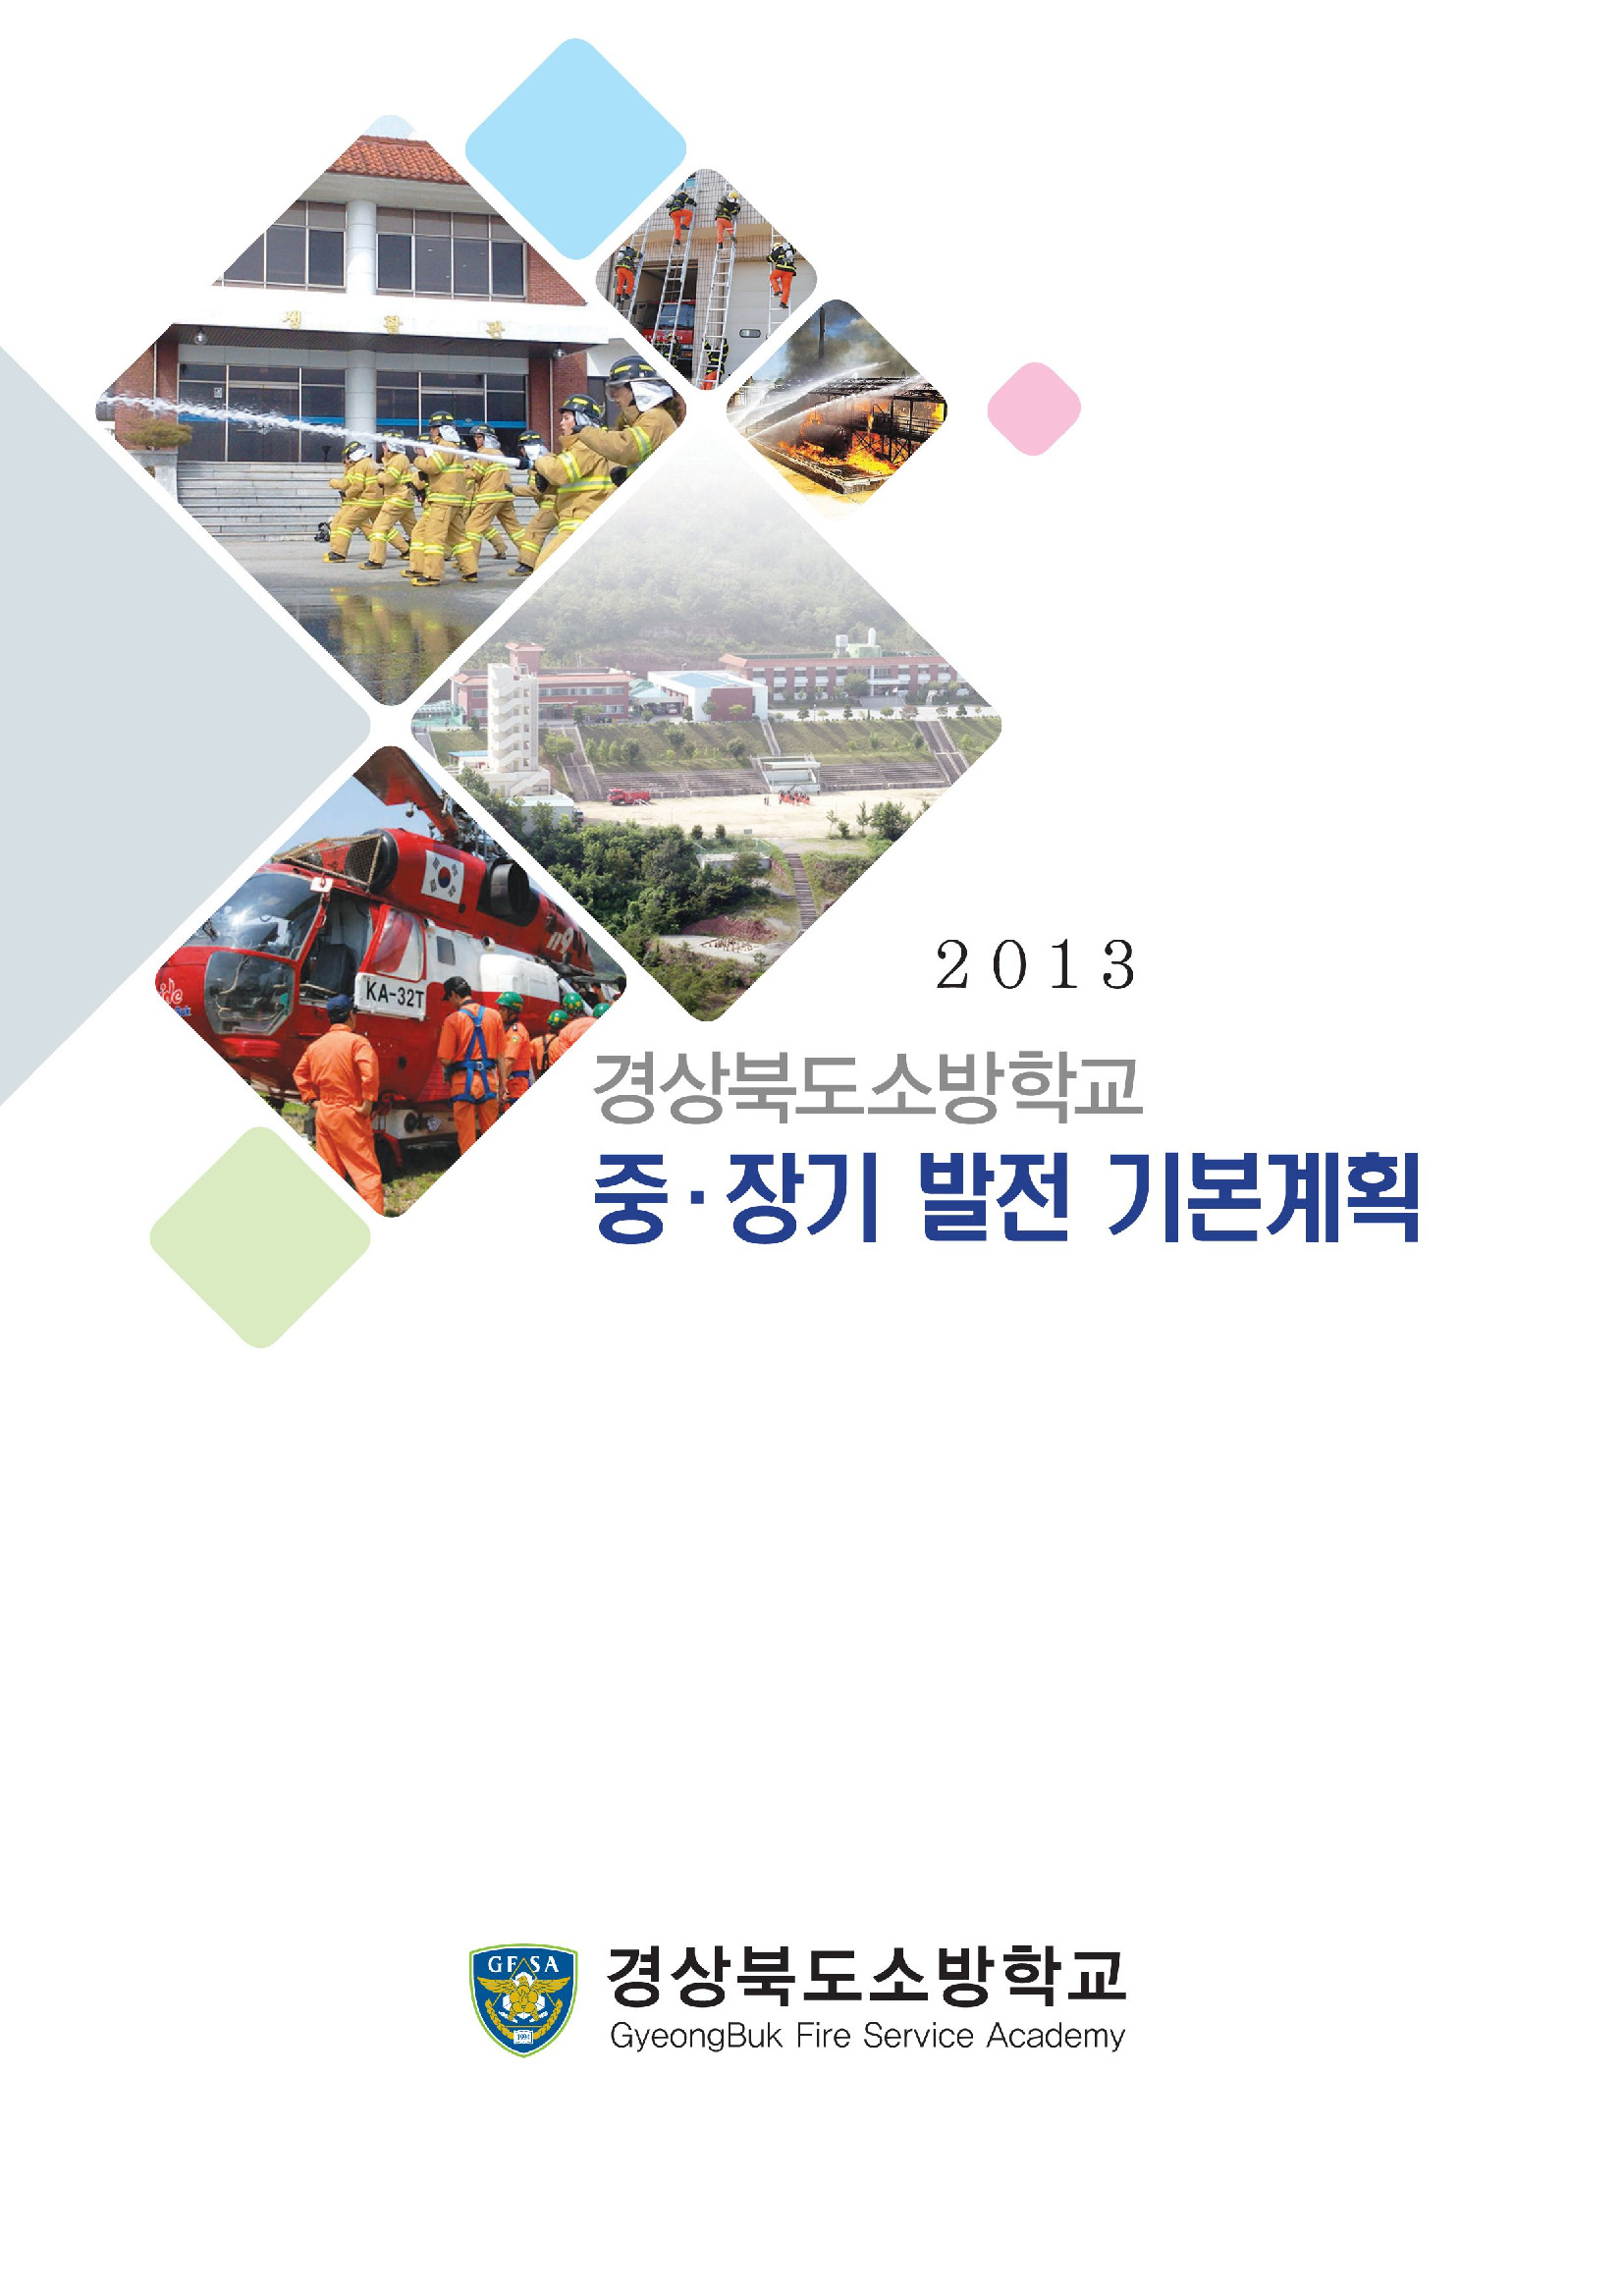 경북소방학교 중장기 발전 기본계획 수립